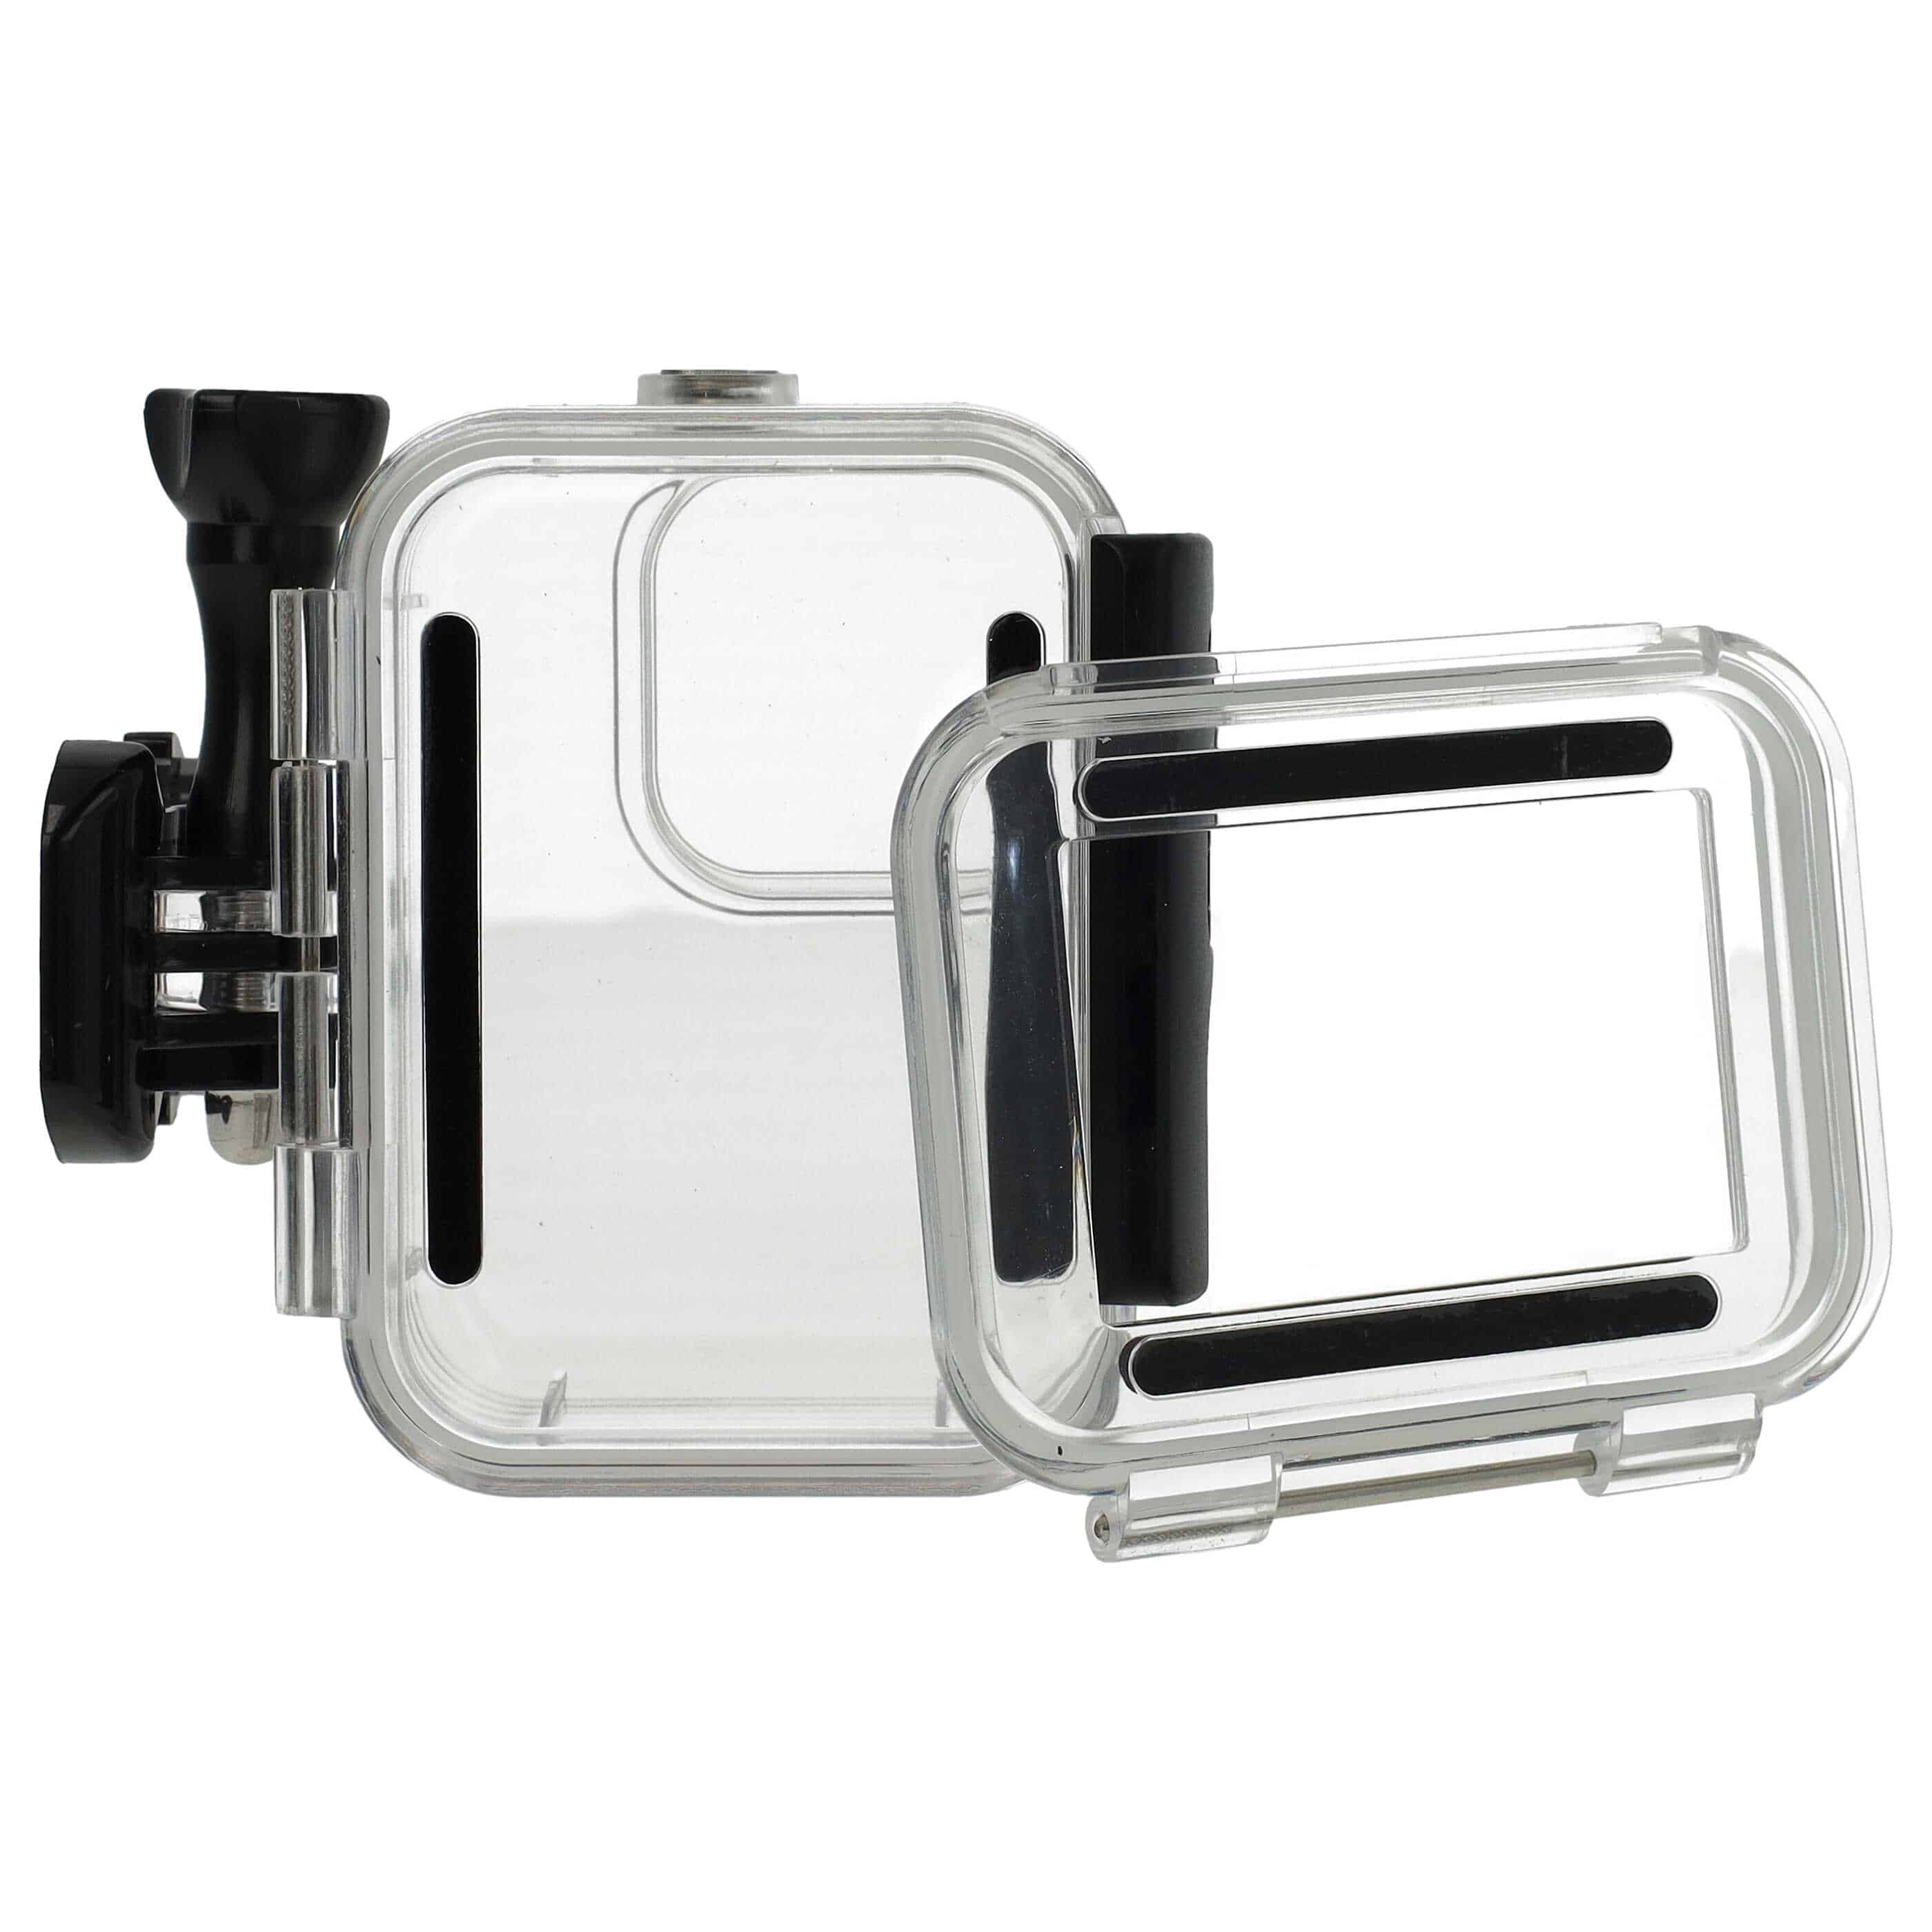 Carcasa sumergible para cámaras acción GoPro Hero 9, 10, 11 - Profundidad máx. 60 m